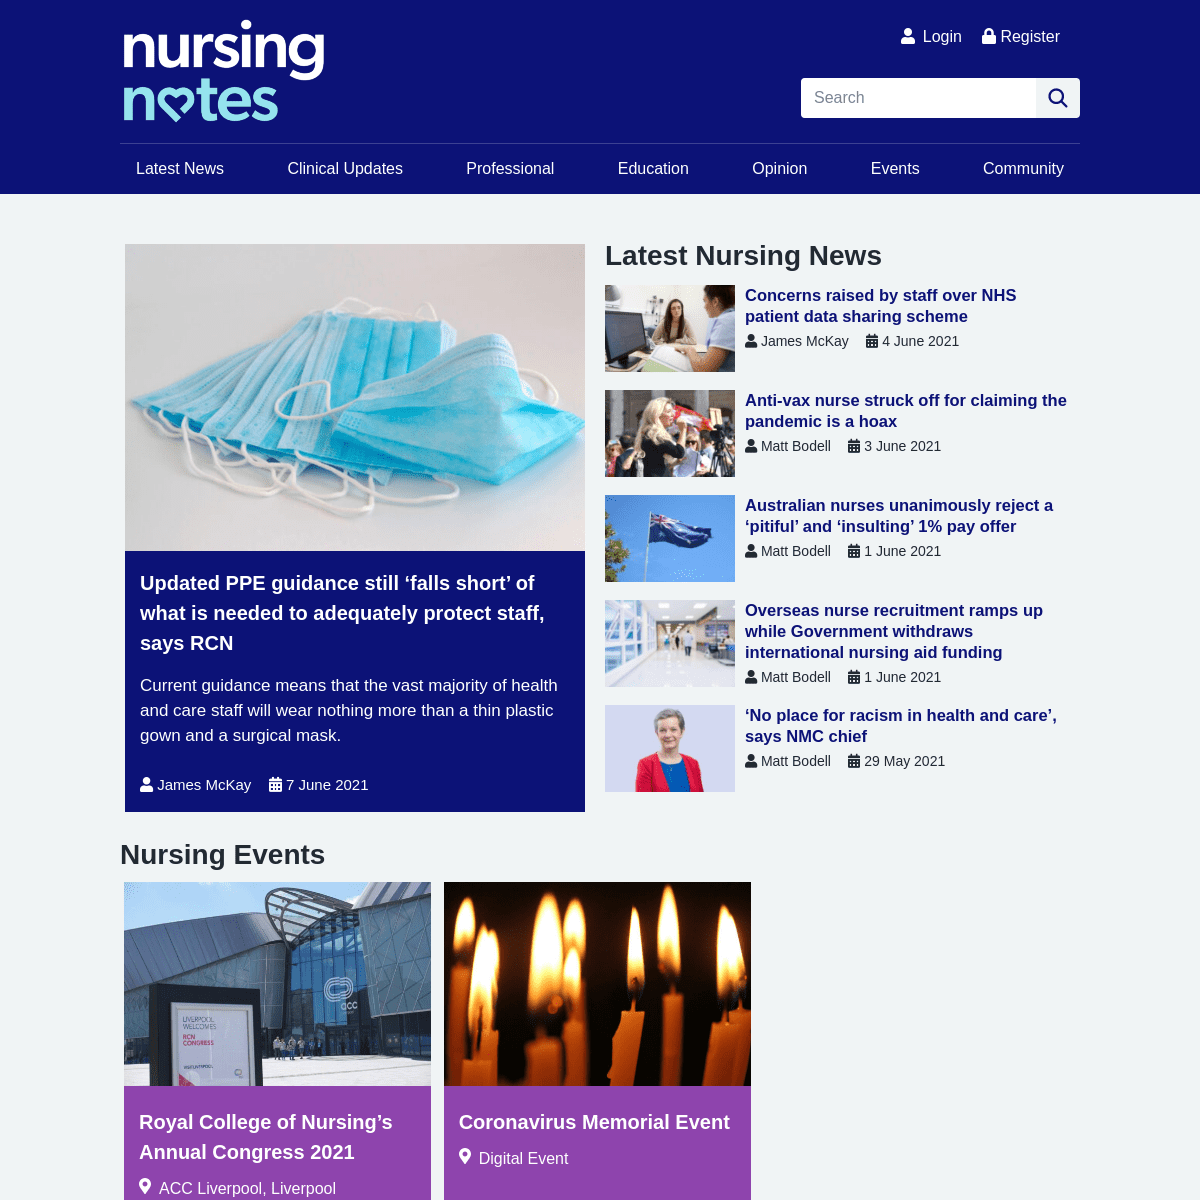 A complete backup of https://nursingnotes.co.uk